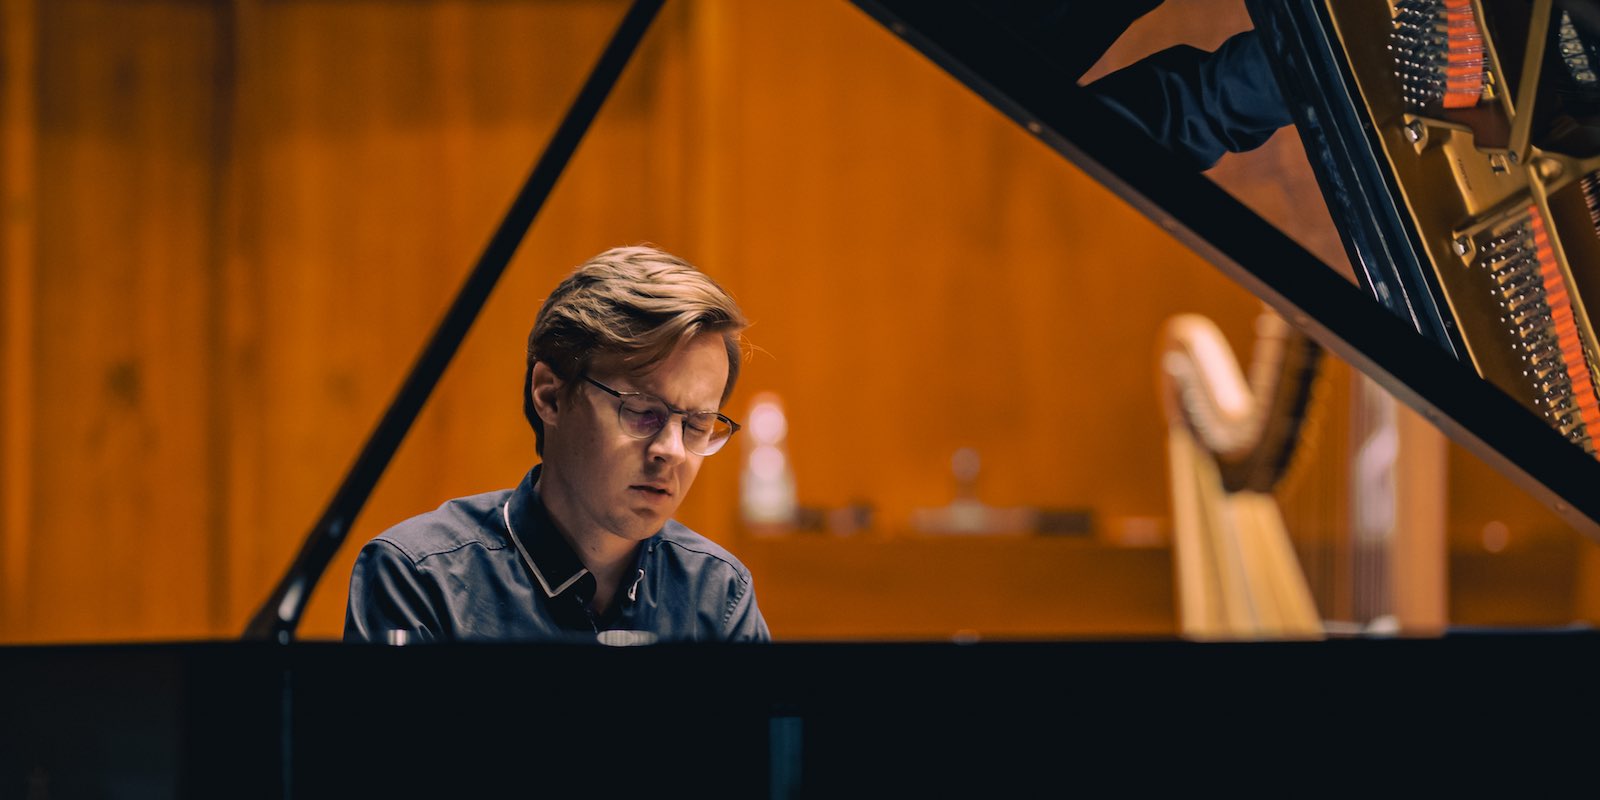 Martin Kaptein Pianista al pianoforte durante un concerto recital.